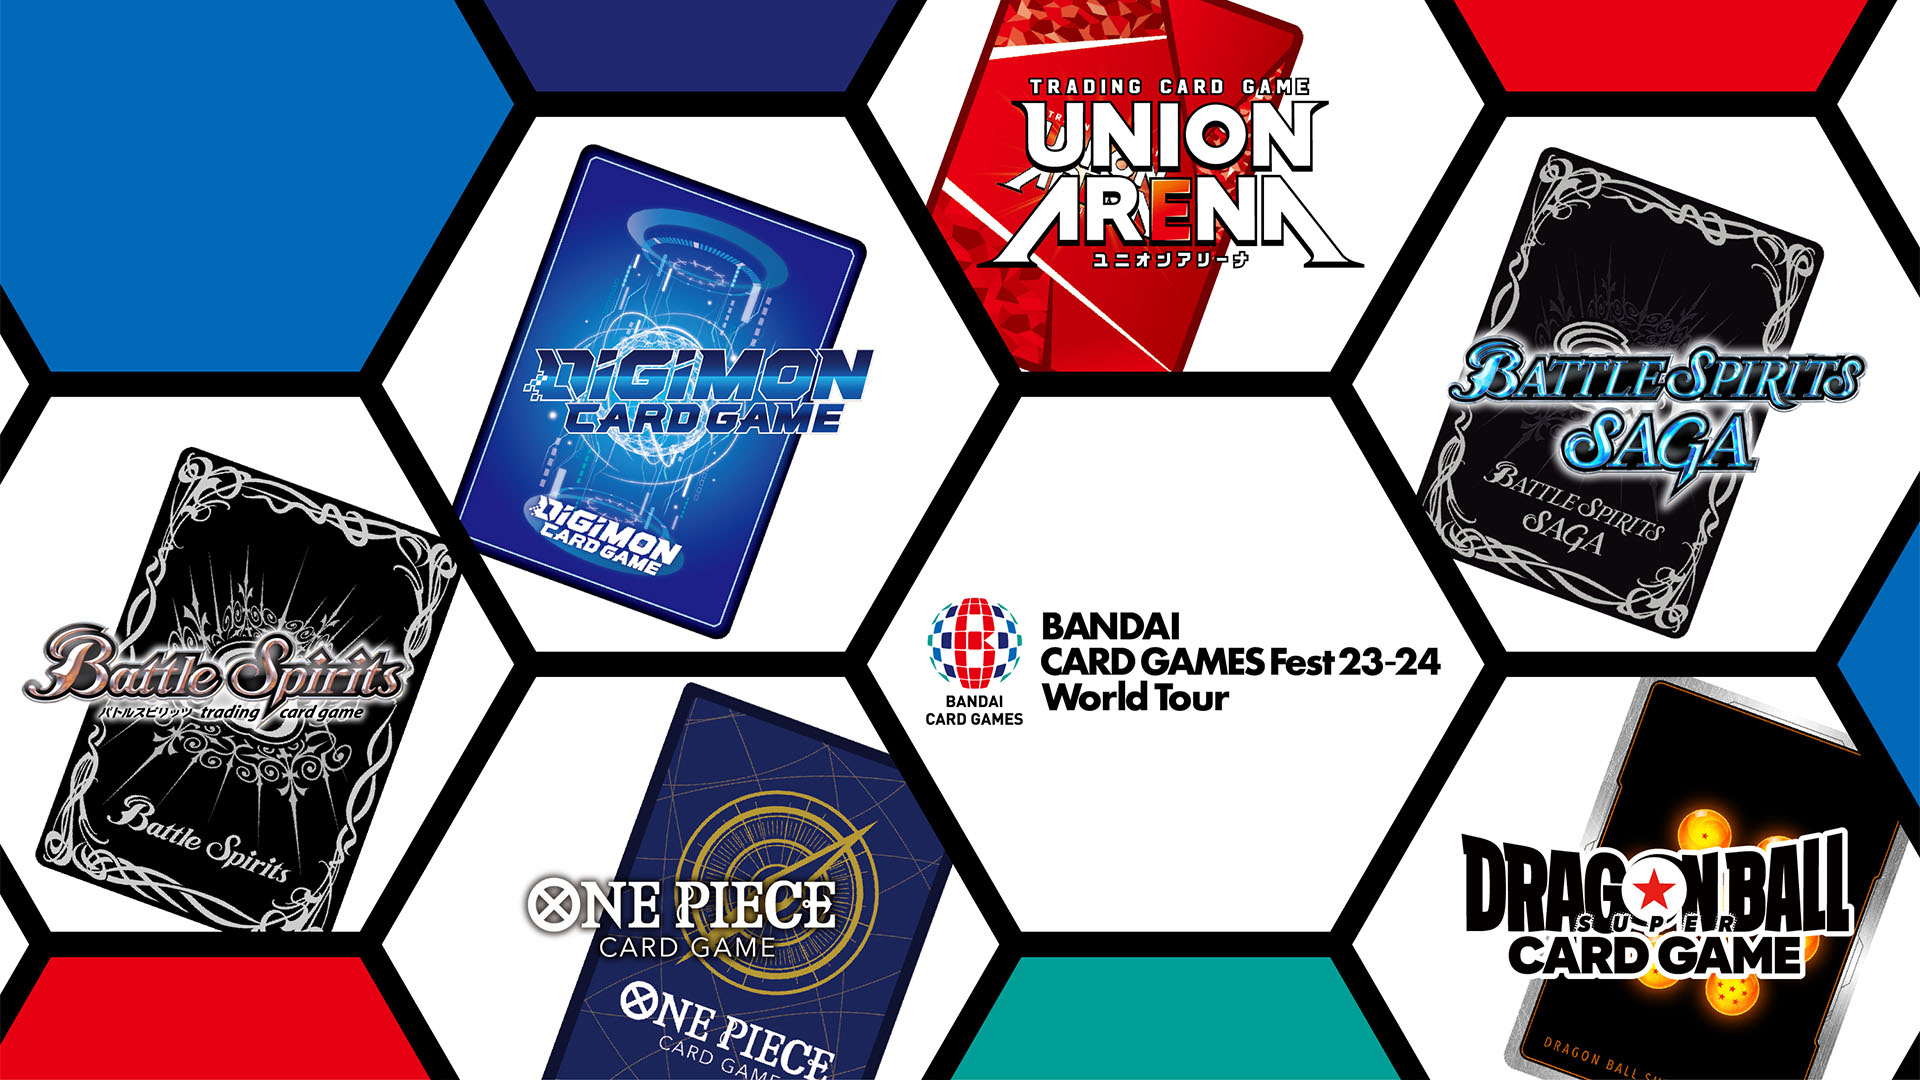 BANDAI CARD GAMES FEST 23－24 World Tour